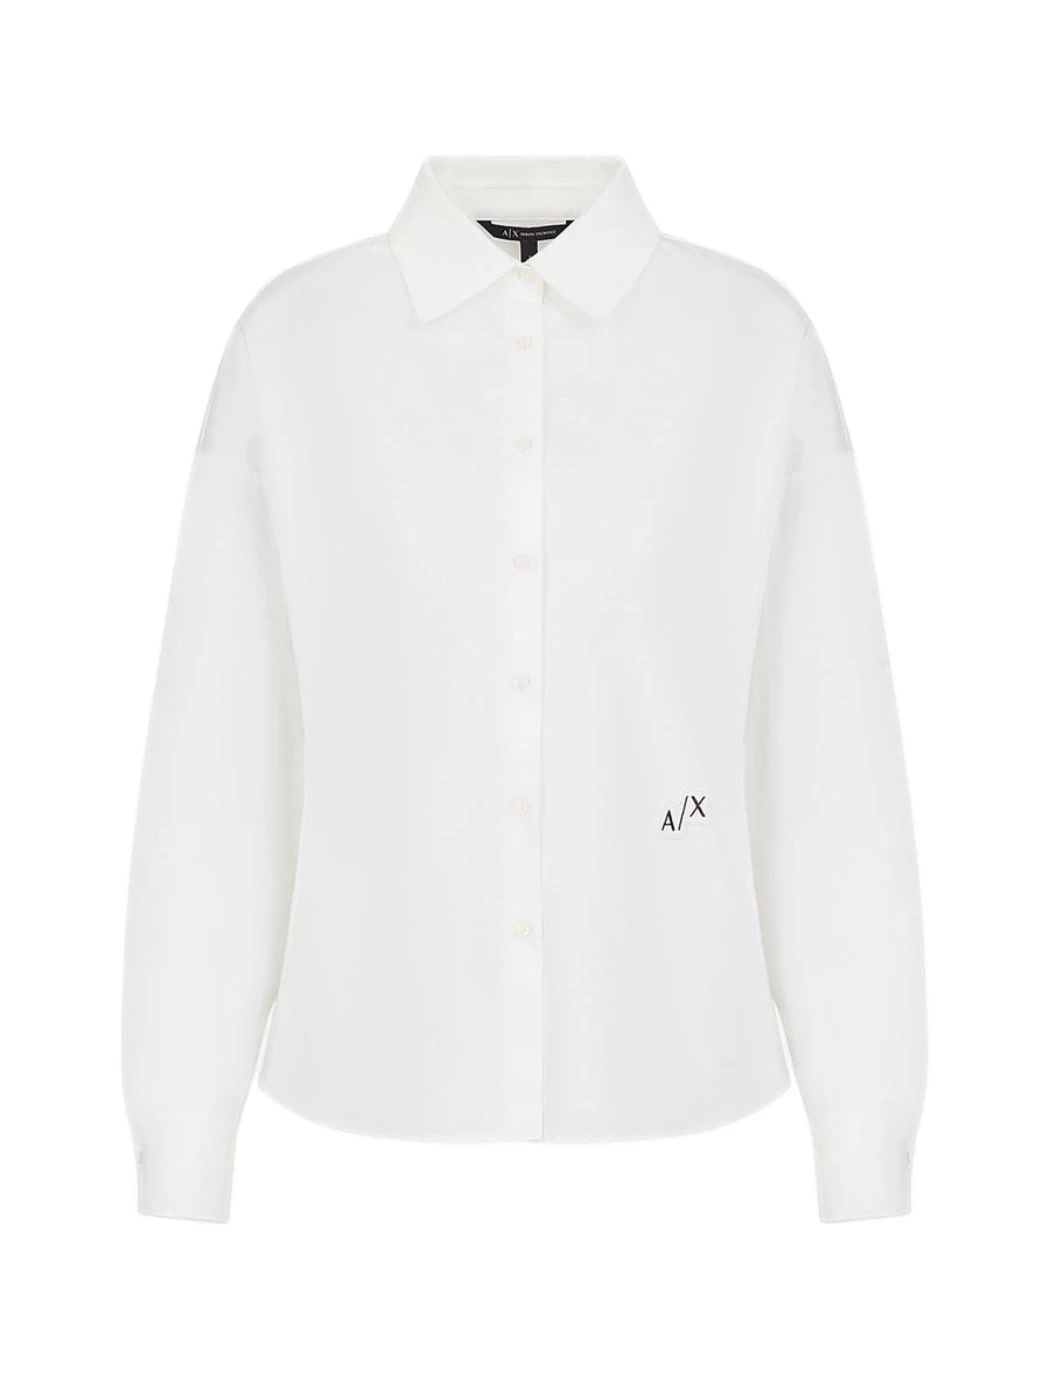 Armani Exchange long-sleeved shirt